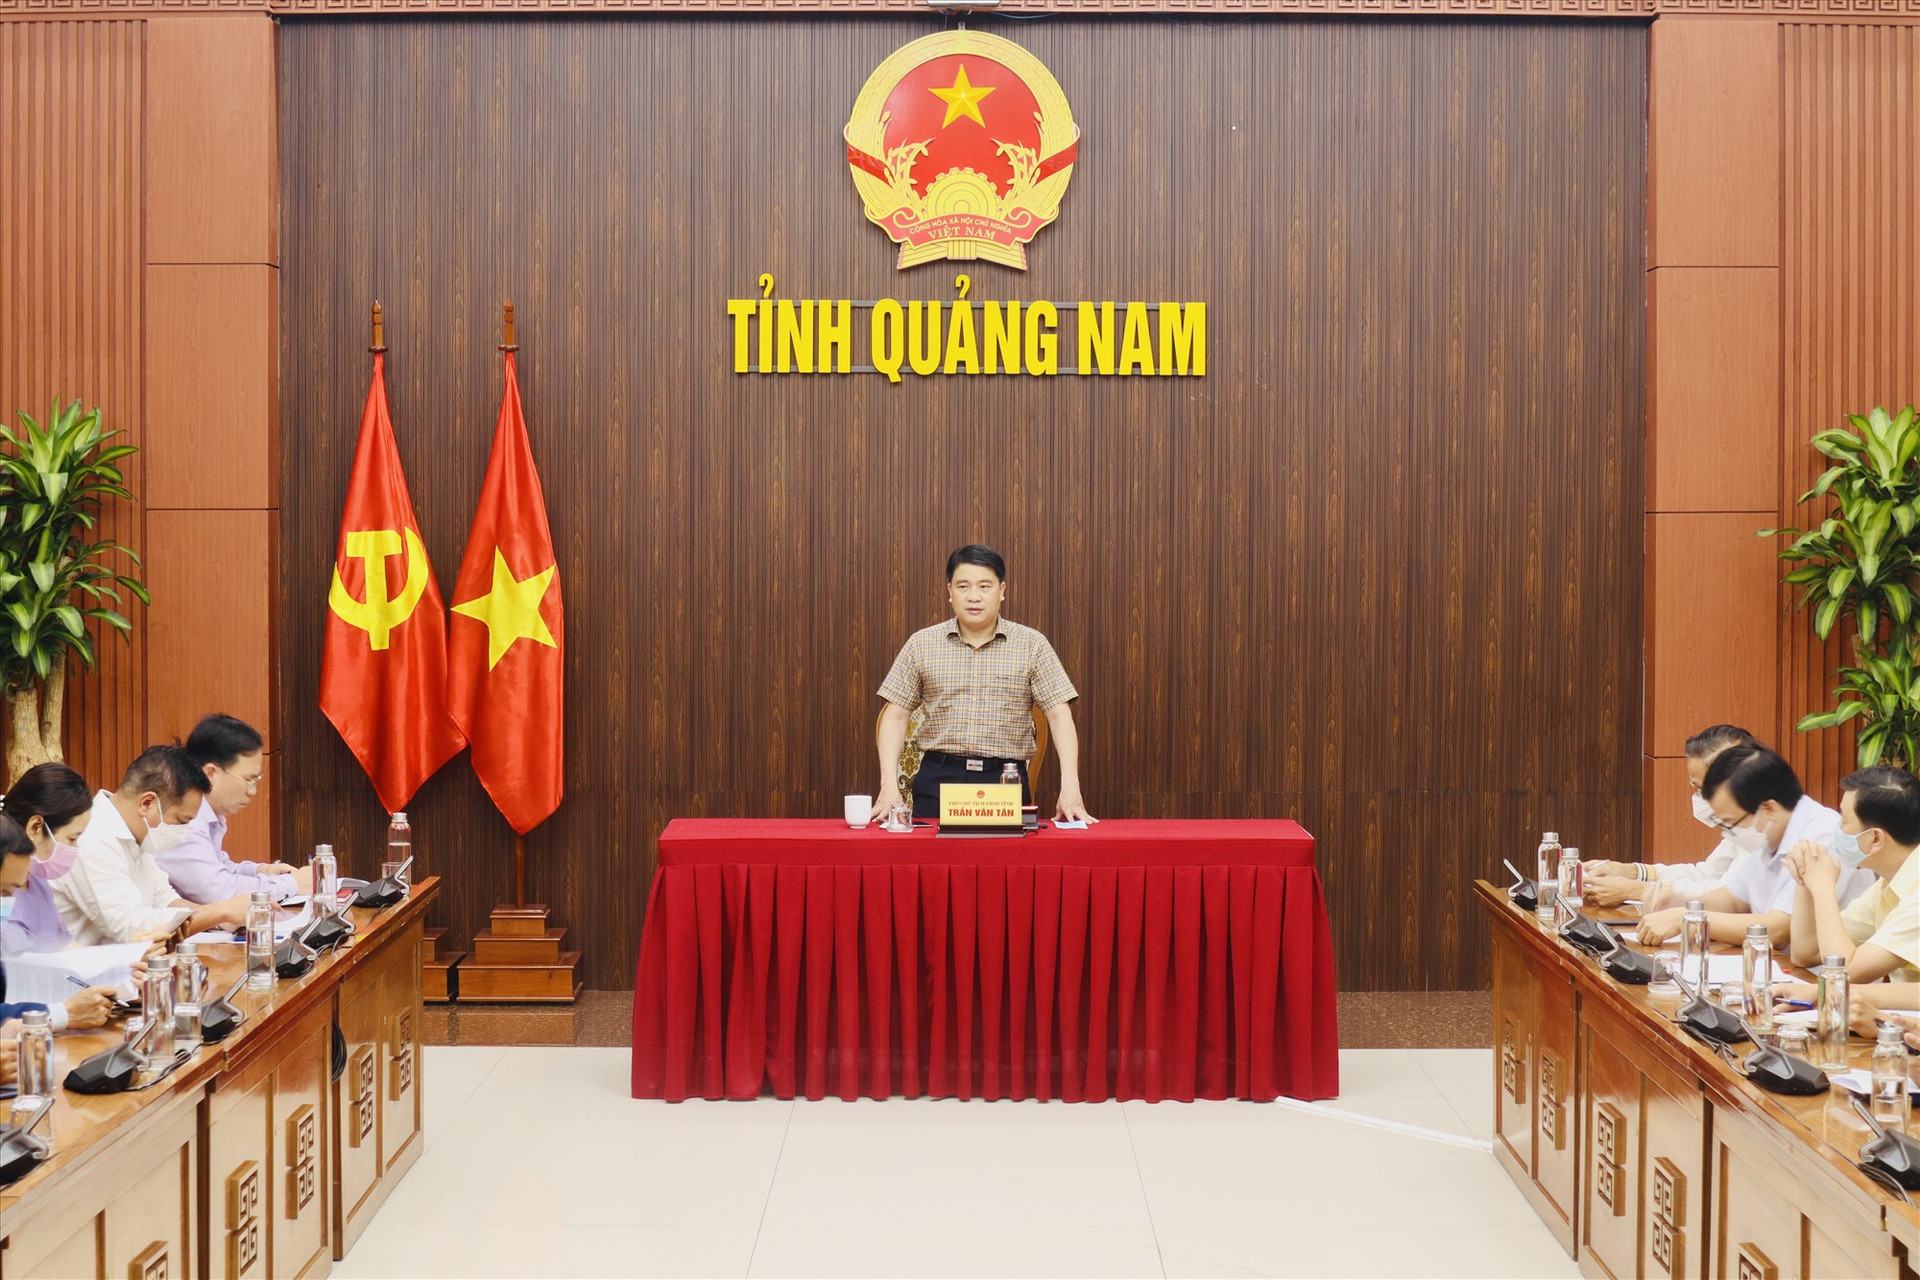 Phó Chủ tịch UBND tỉnh Trần Văn Tân đánh giá cao các cơ quan liên quan đã phối hợp tốt tổ chức chu đáo, thành công lễ khai mạc Năm du lịch quốc gia - Quảng Nam 2022. Ảnh: Q.T